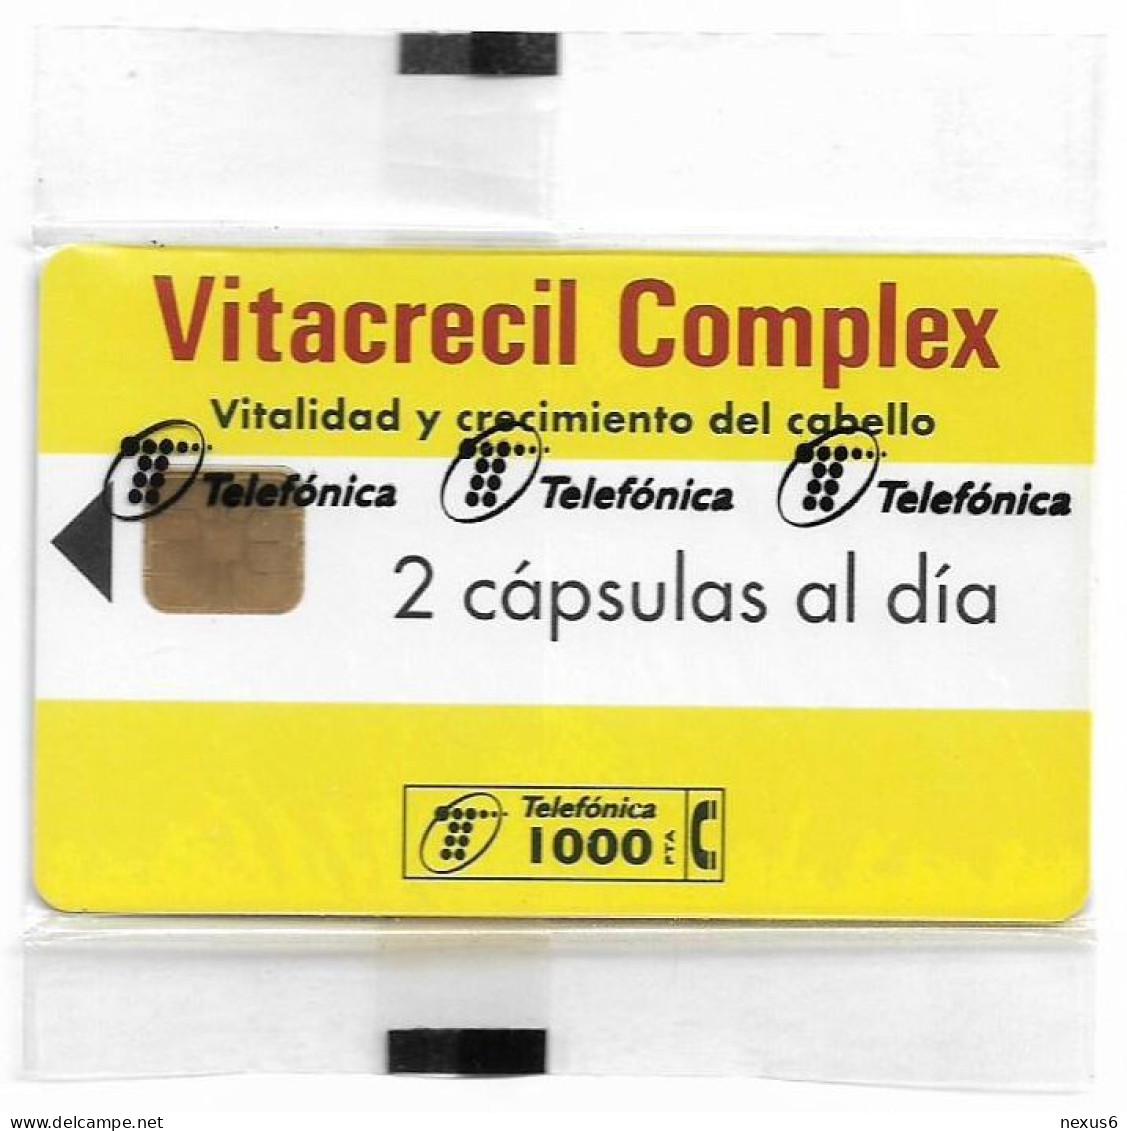 Spain - Telefónica - Vitacrecil Complex - P-116 - 03.1995, 1.000PTA, 10.000ex, NSB - Emisiones Privadas